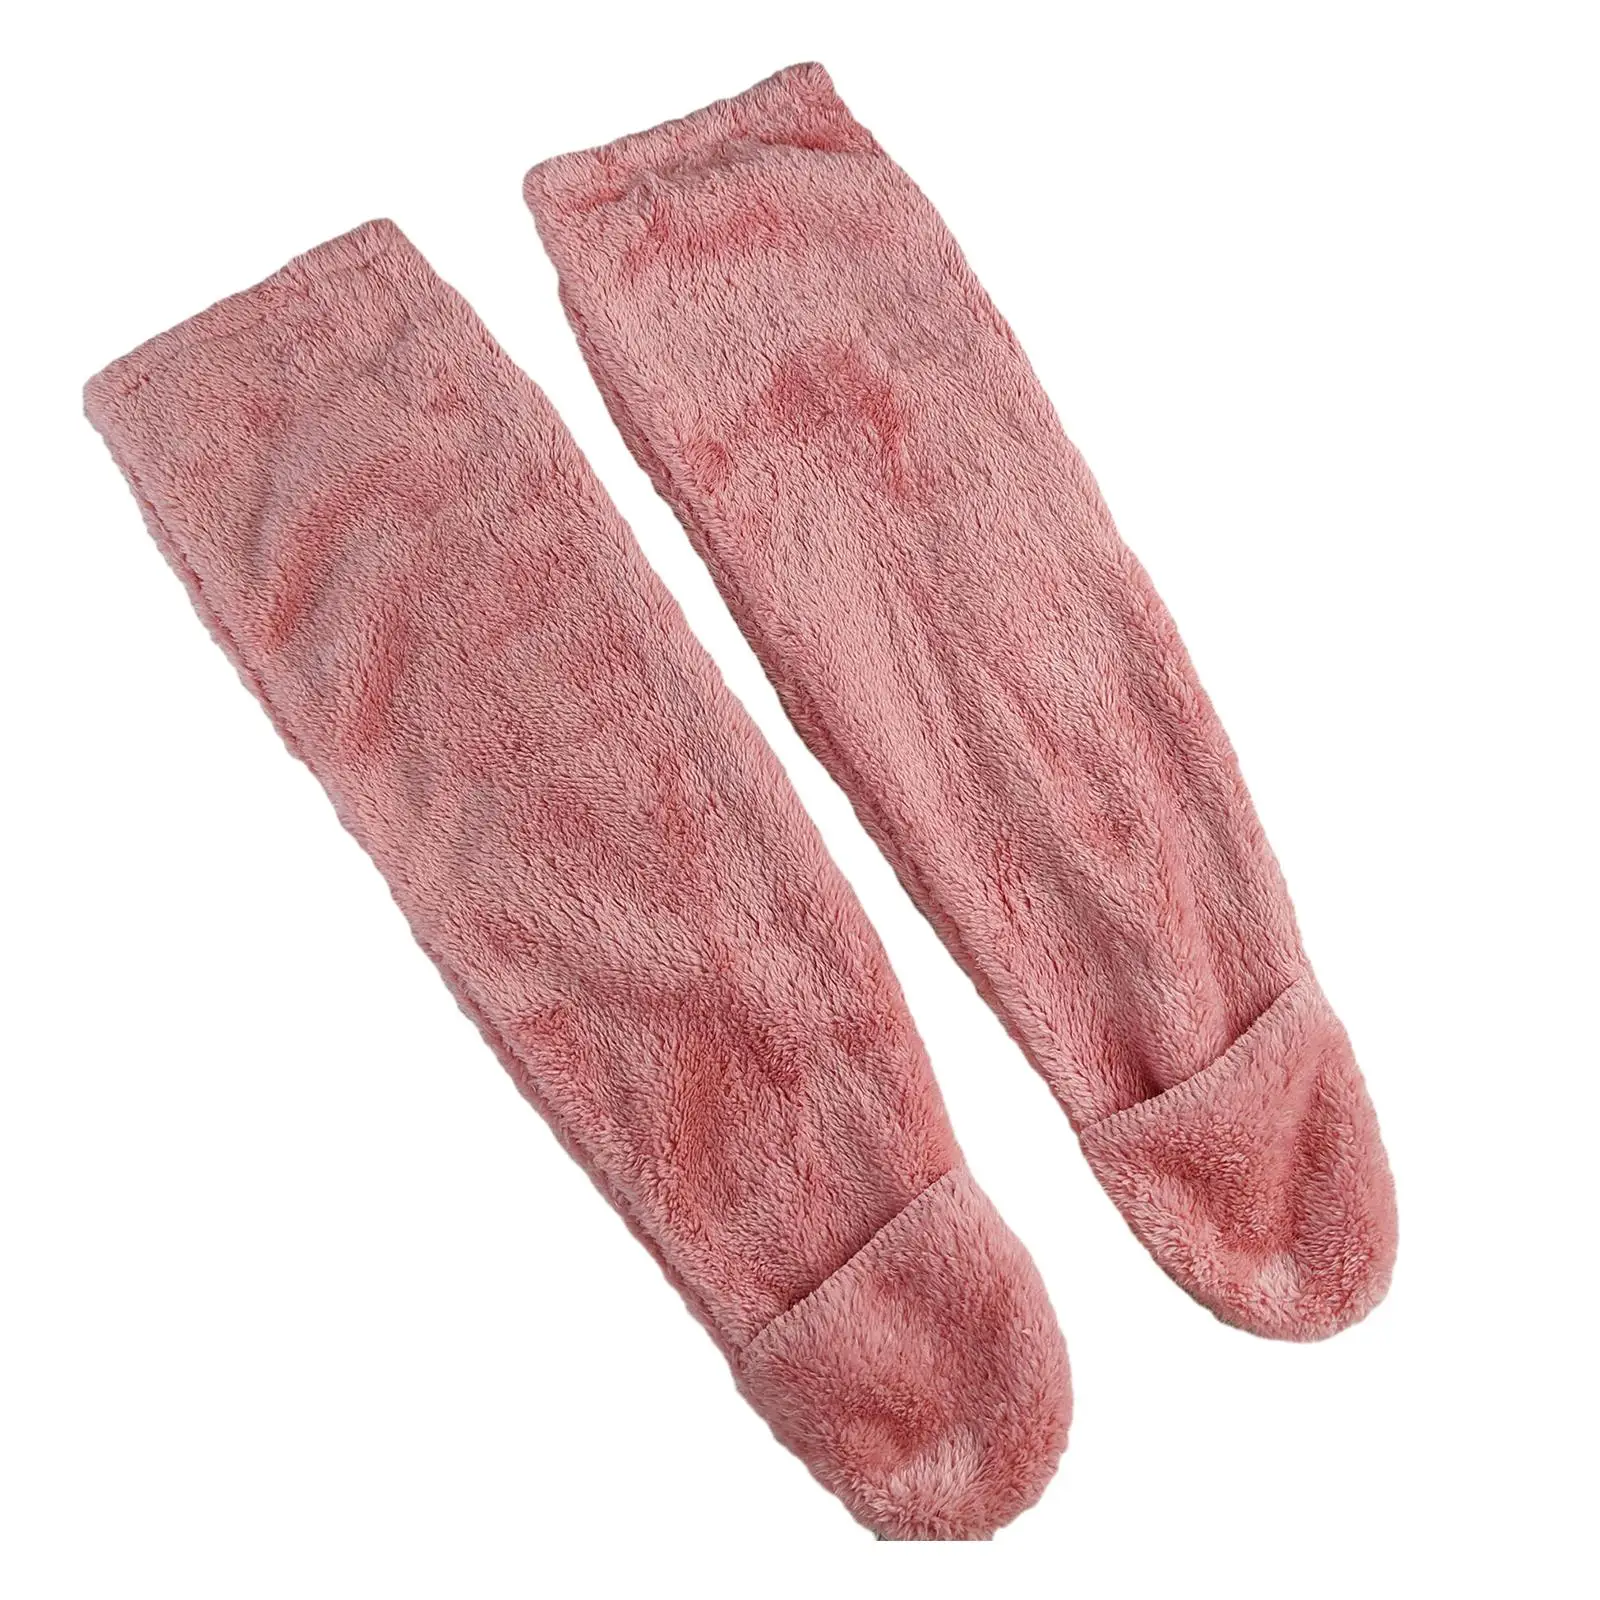 Womens Knee High Socks Home Long Tube Stockings Winter Plush Leg Warmer Thigh High Socks Slipper Stockings for Dorm Bedroom